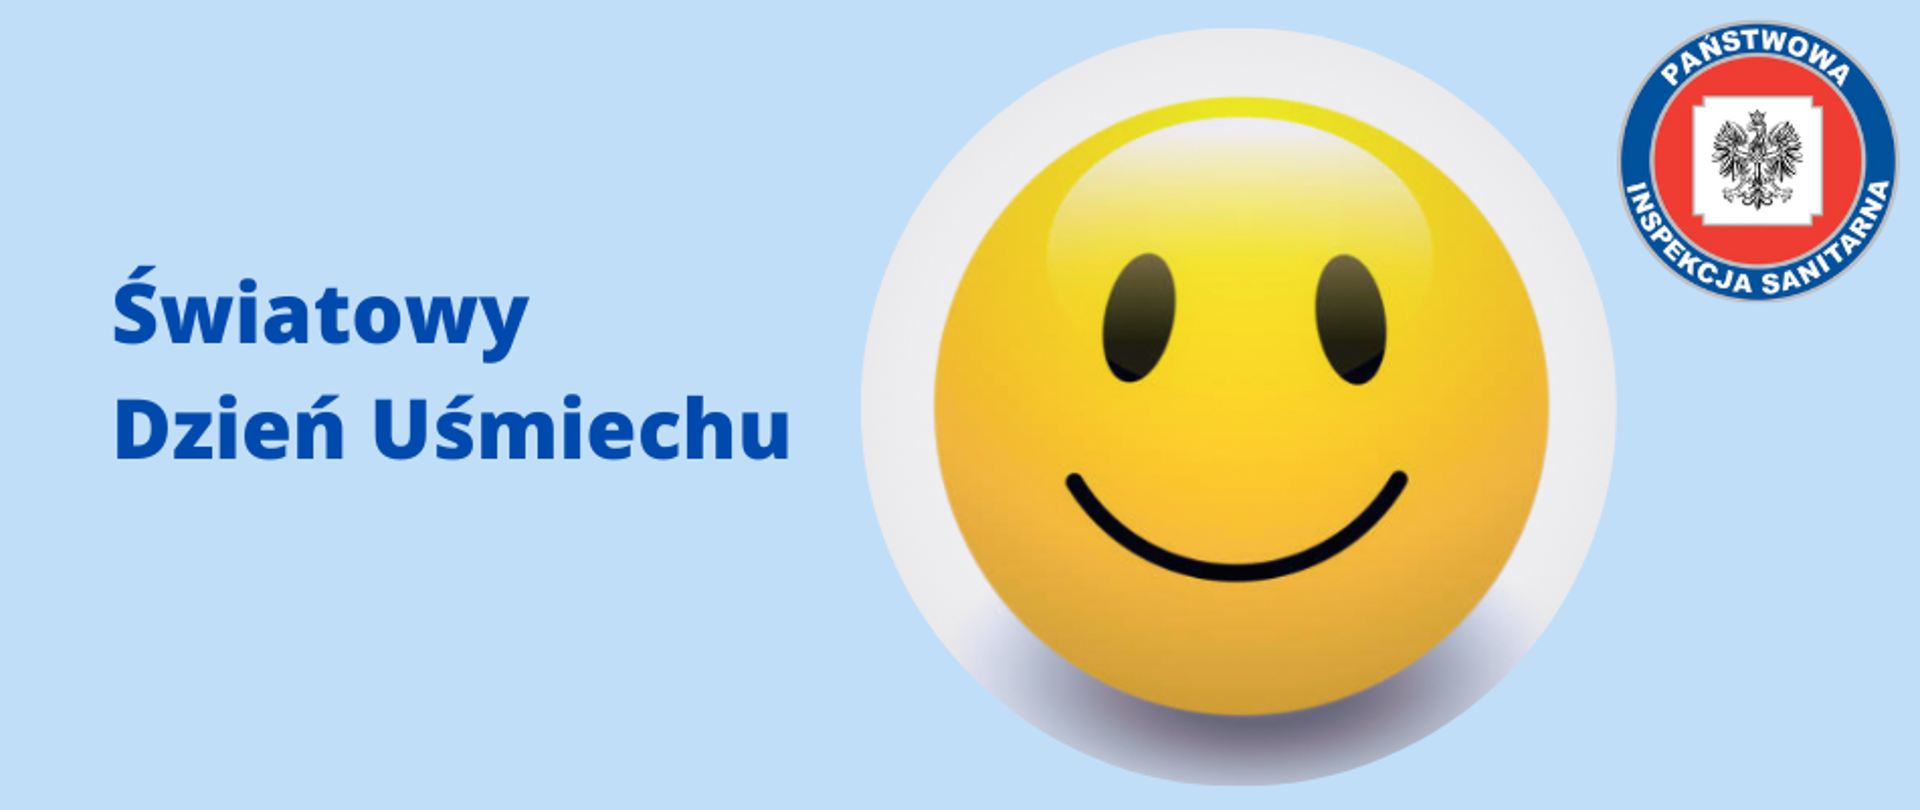 Zdjęcie przedstawia tytuł "Światowy Dzień Uśmiechu" emotikonę oraz logo Państwowej Inspekcji Sanitarnej